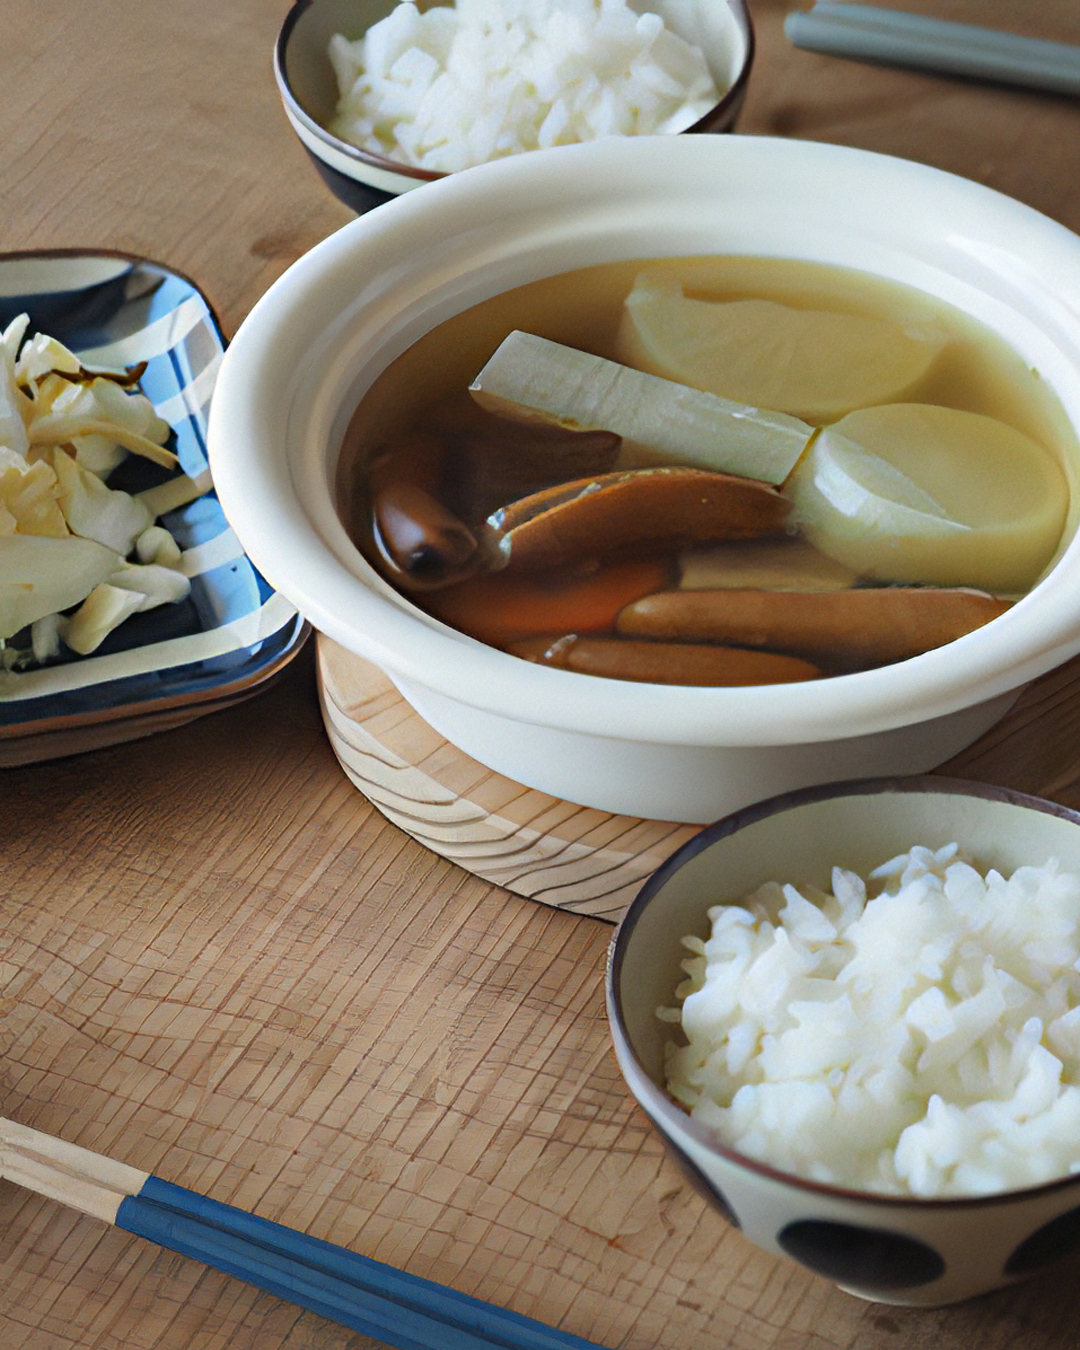 野田琺瑯萬用鍋奶白| moli store 日本製煮食鍋具